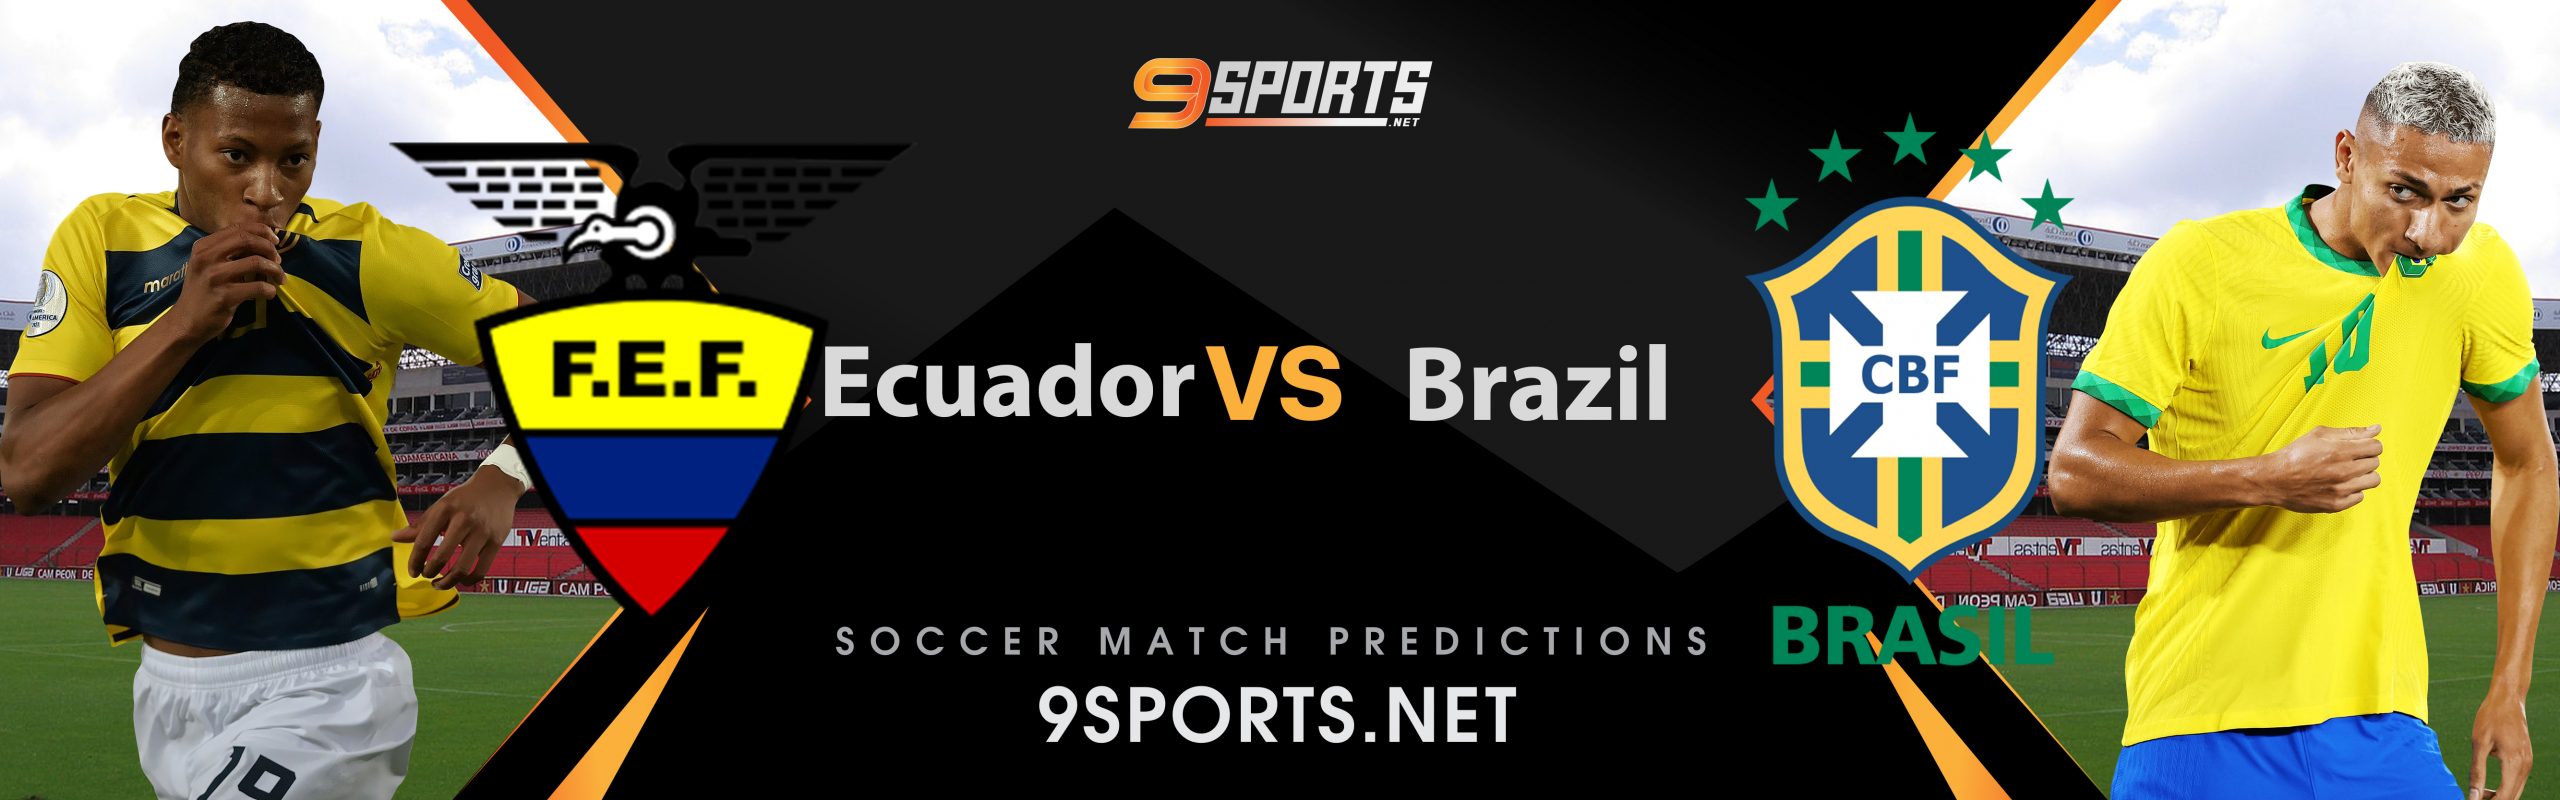 ทีเด็ดวิเคราะห์บอล บอลโลก โซนอเมริกาใต้ (World Cup South America Zone) เอกวาดอร์ VS บราซิล